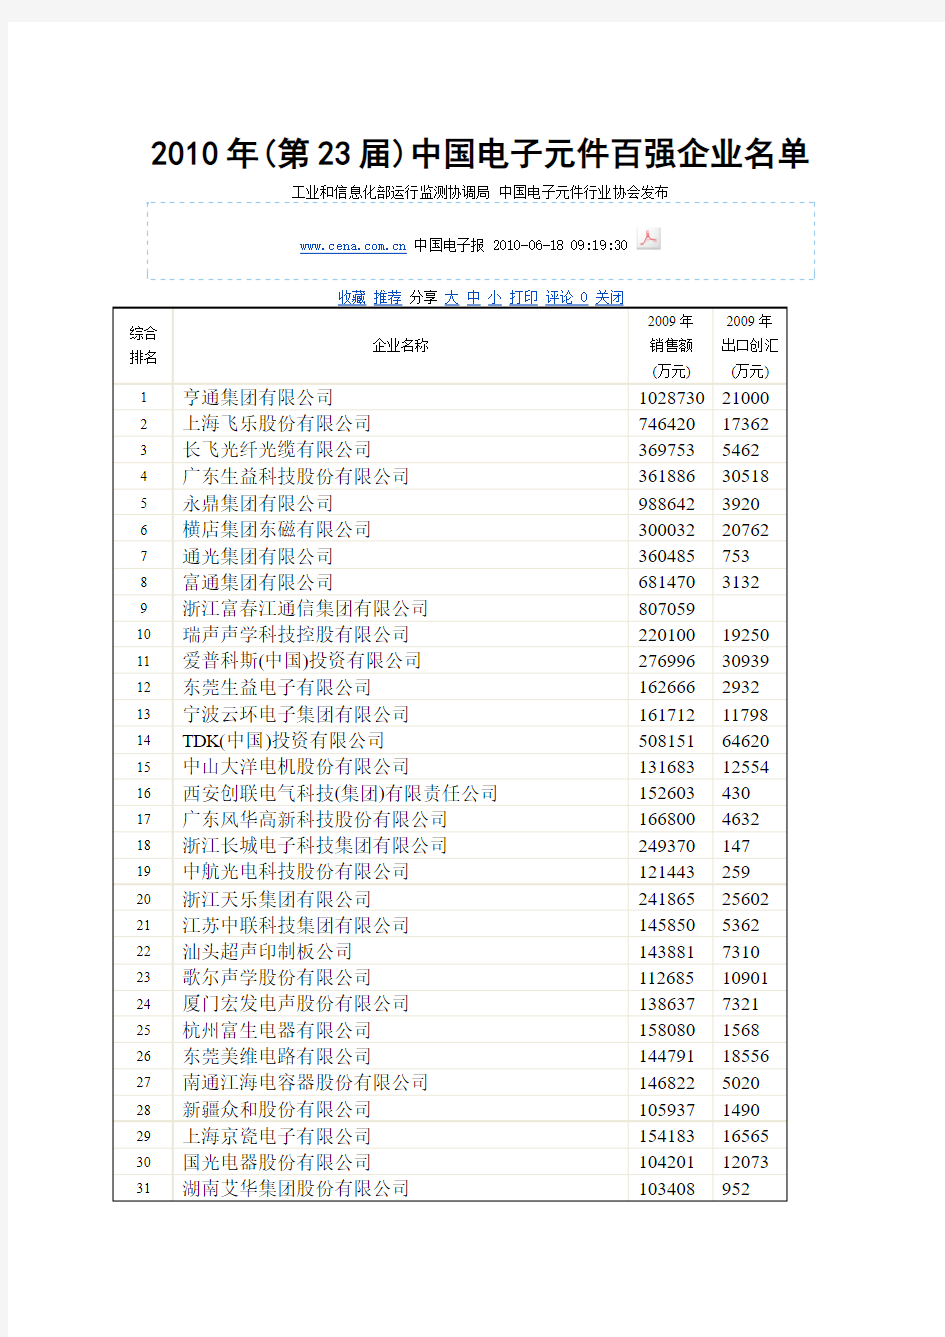 2010年(第23届)中国电子元件百强企业名单